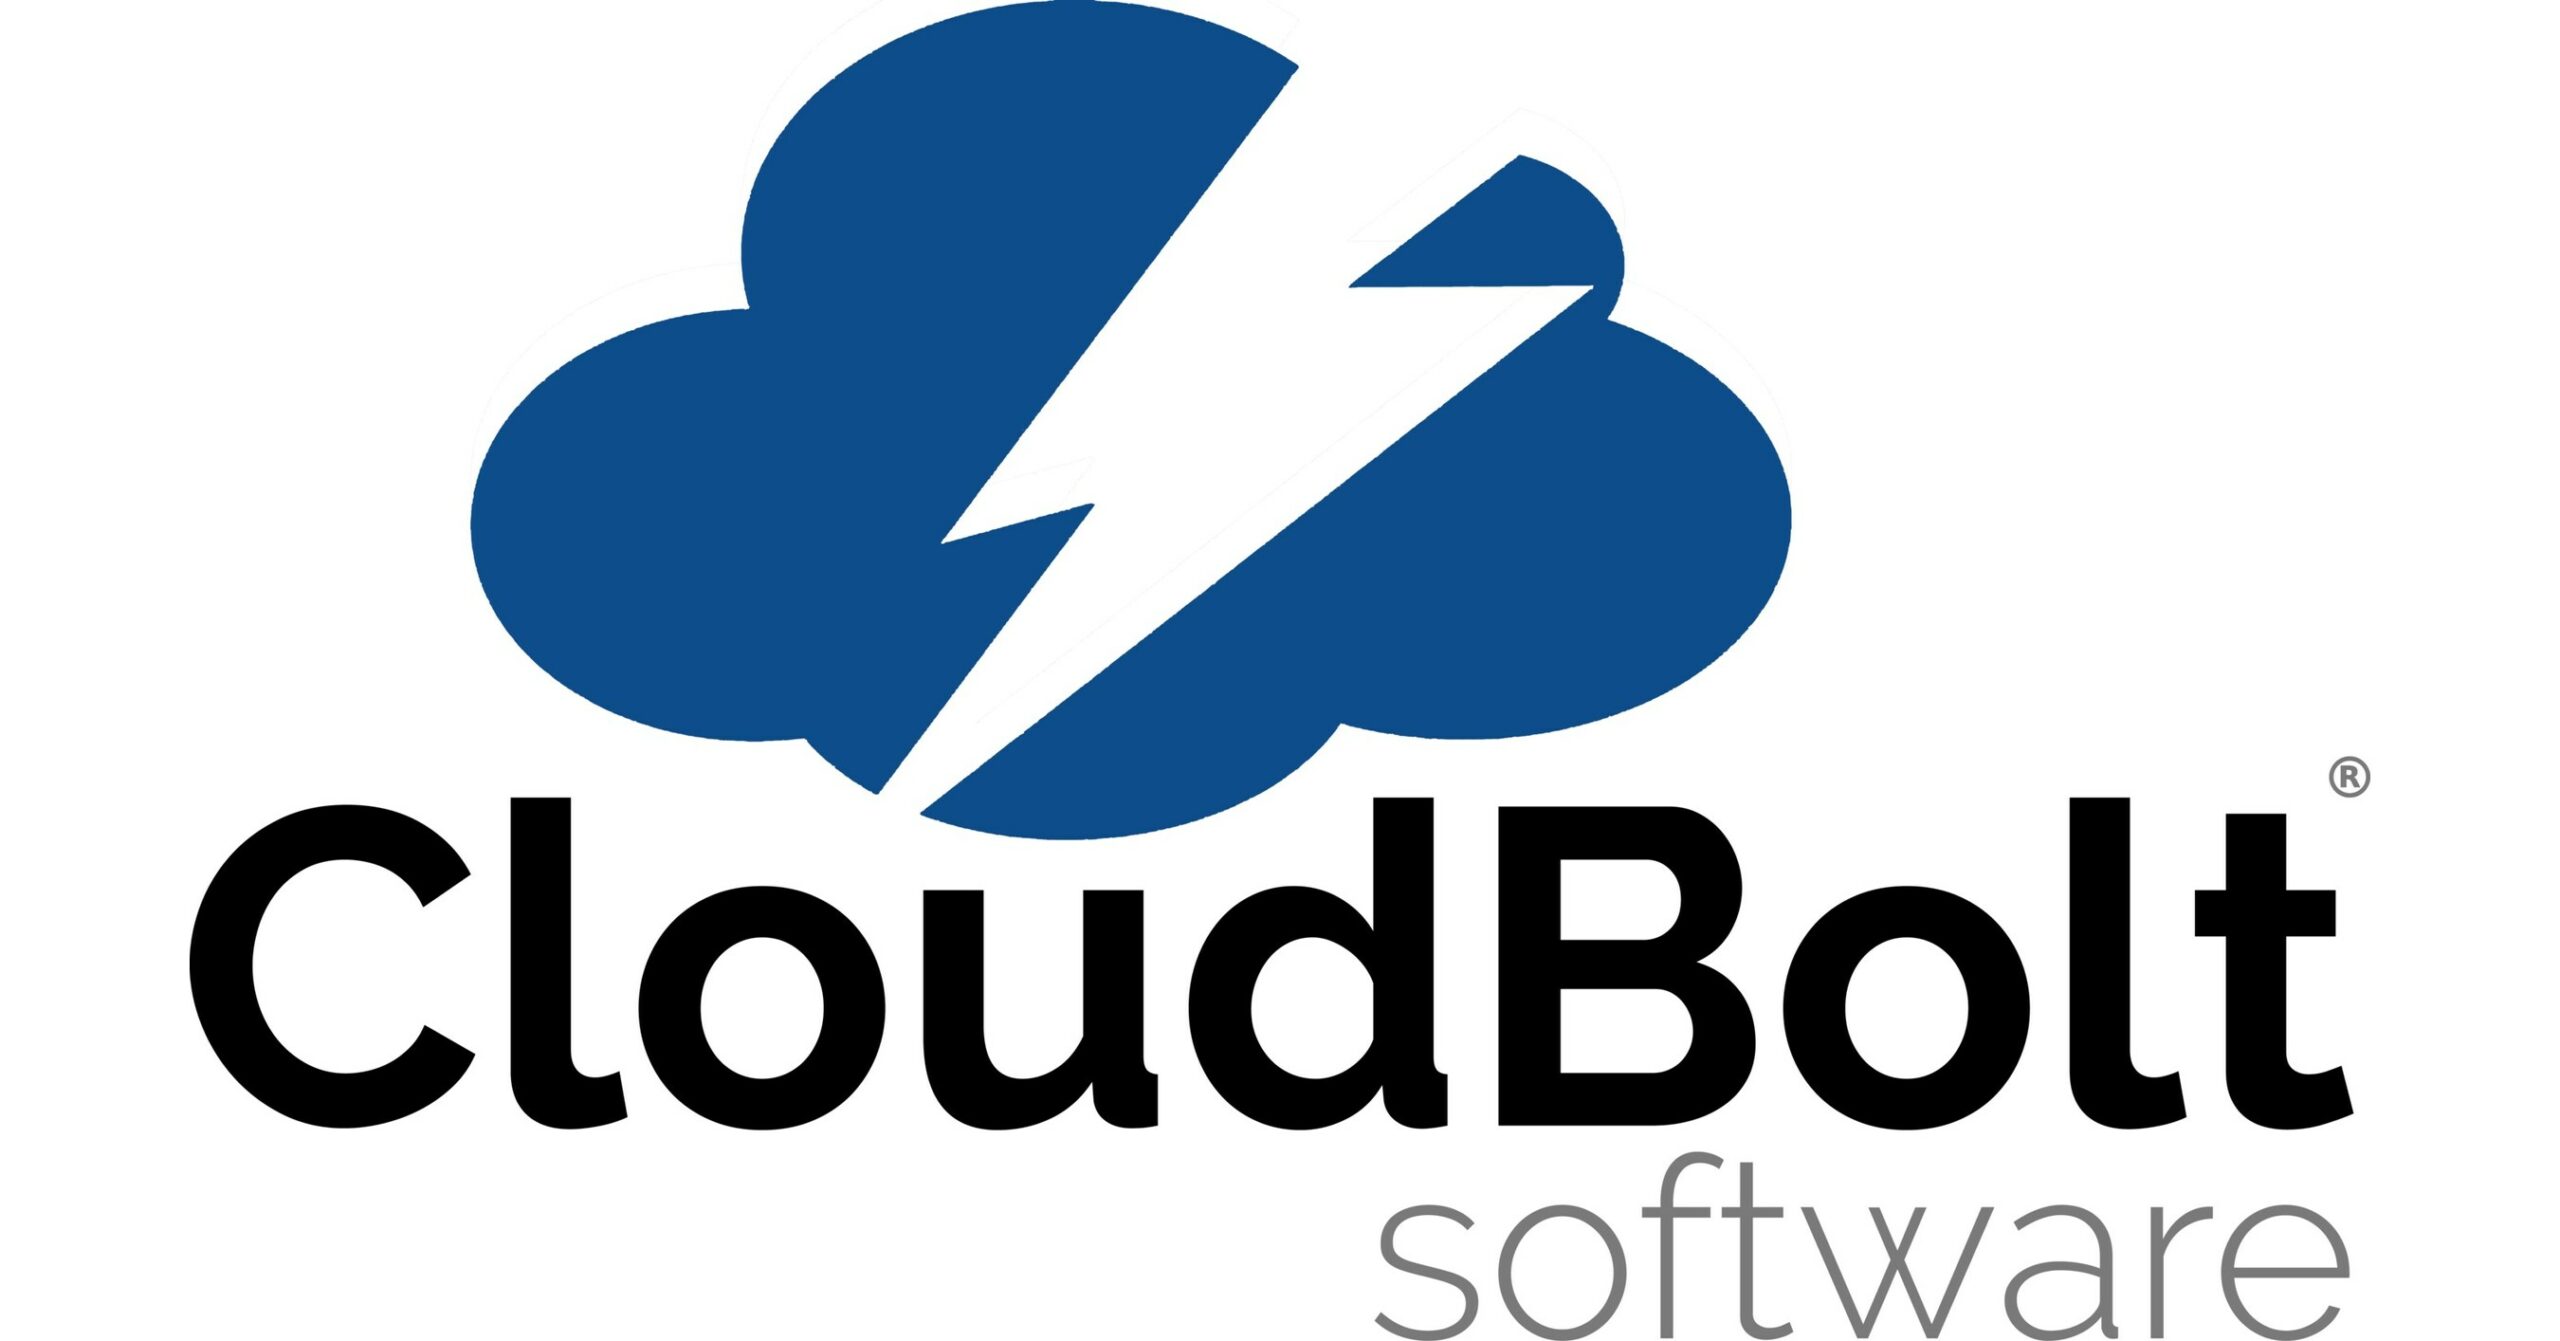 CloudBolt Software Logo